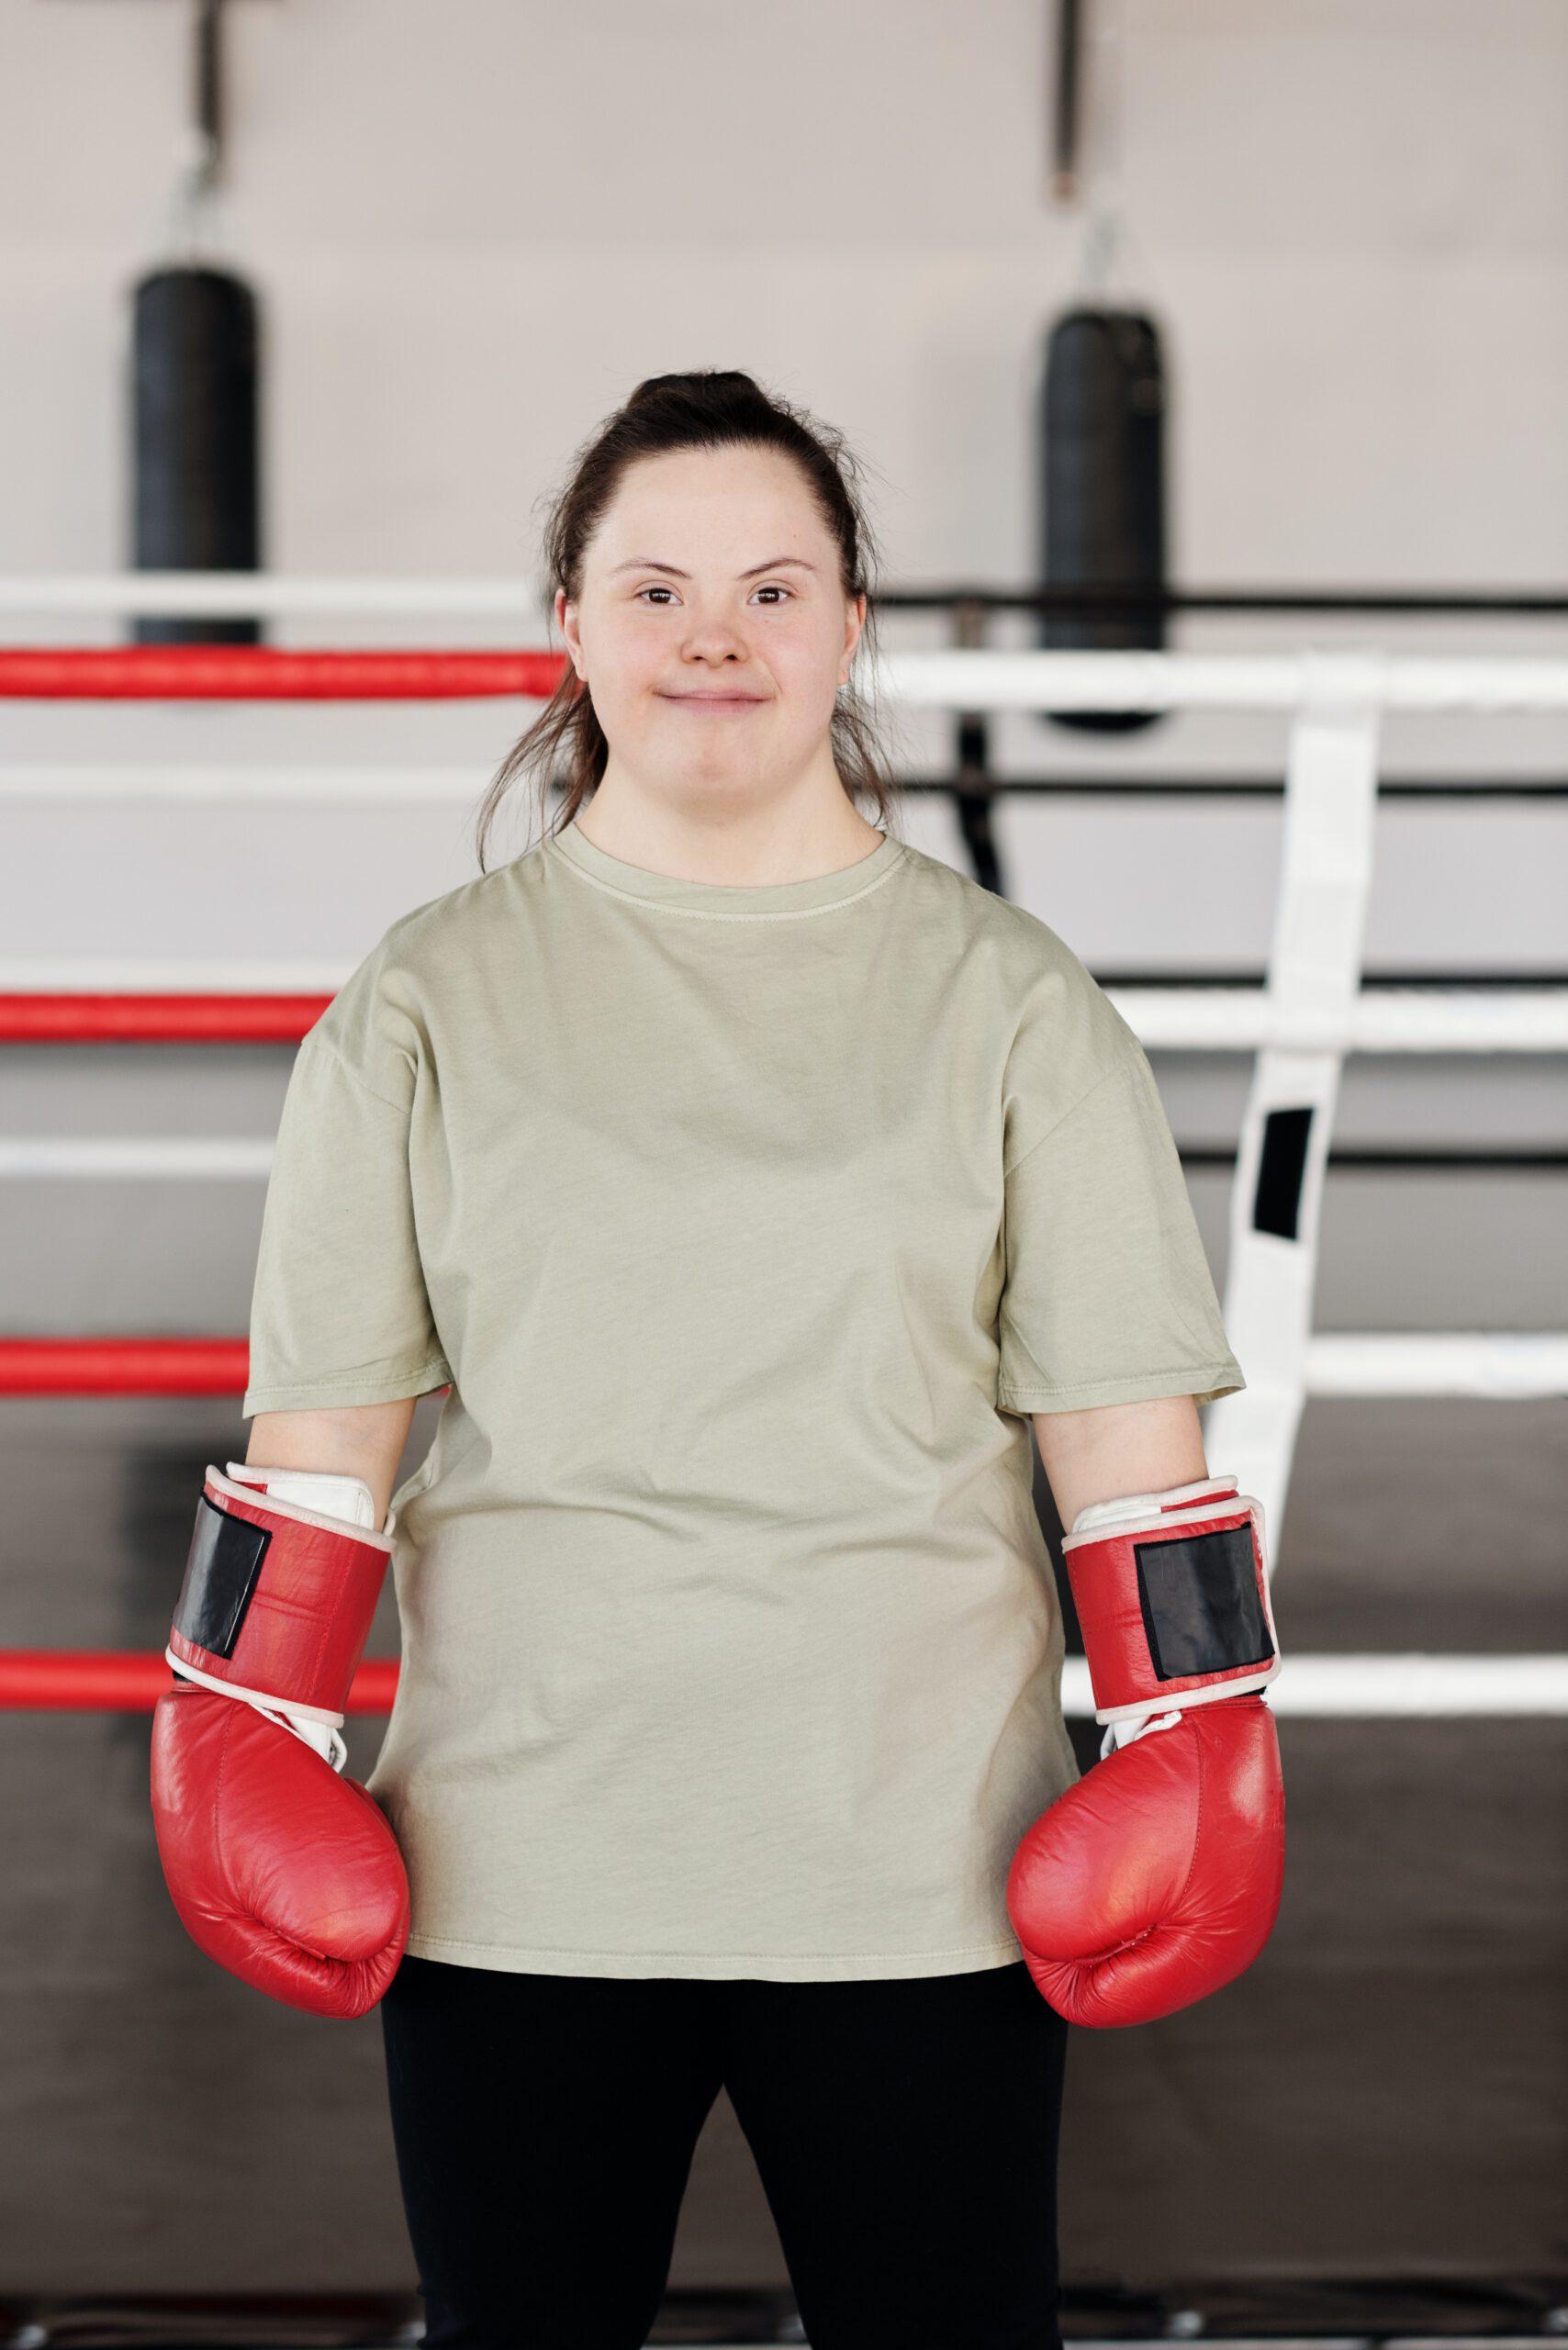 Warum Menschen mit Behinderung Kampfsport betreiben sollten